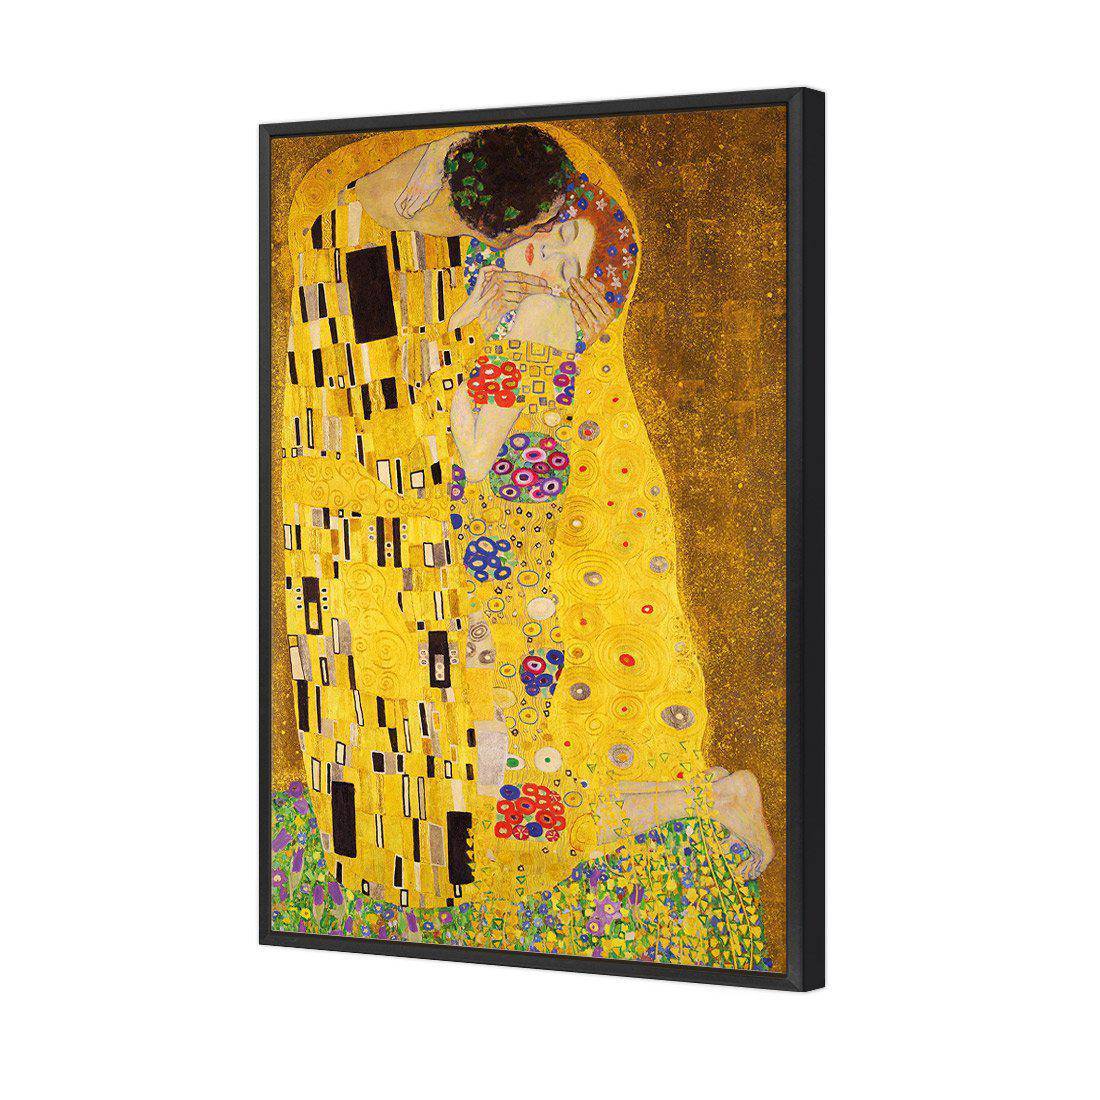 The Kiss by Klimt Canvas Art-Canvas-Wall Art Designs-45x30cm-Canvas - Black Frame-Wall Art Designs